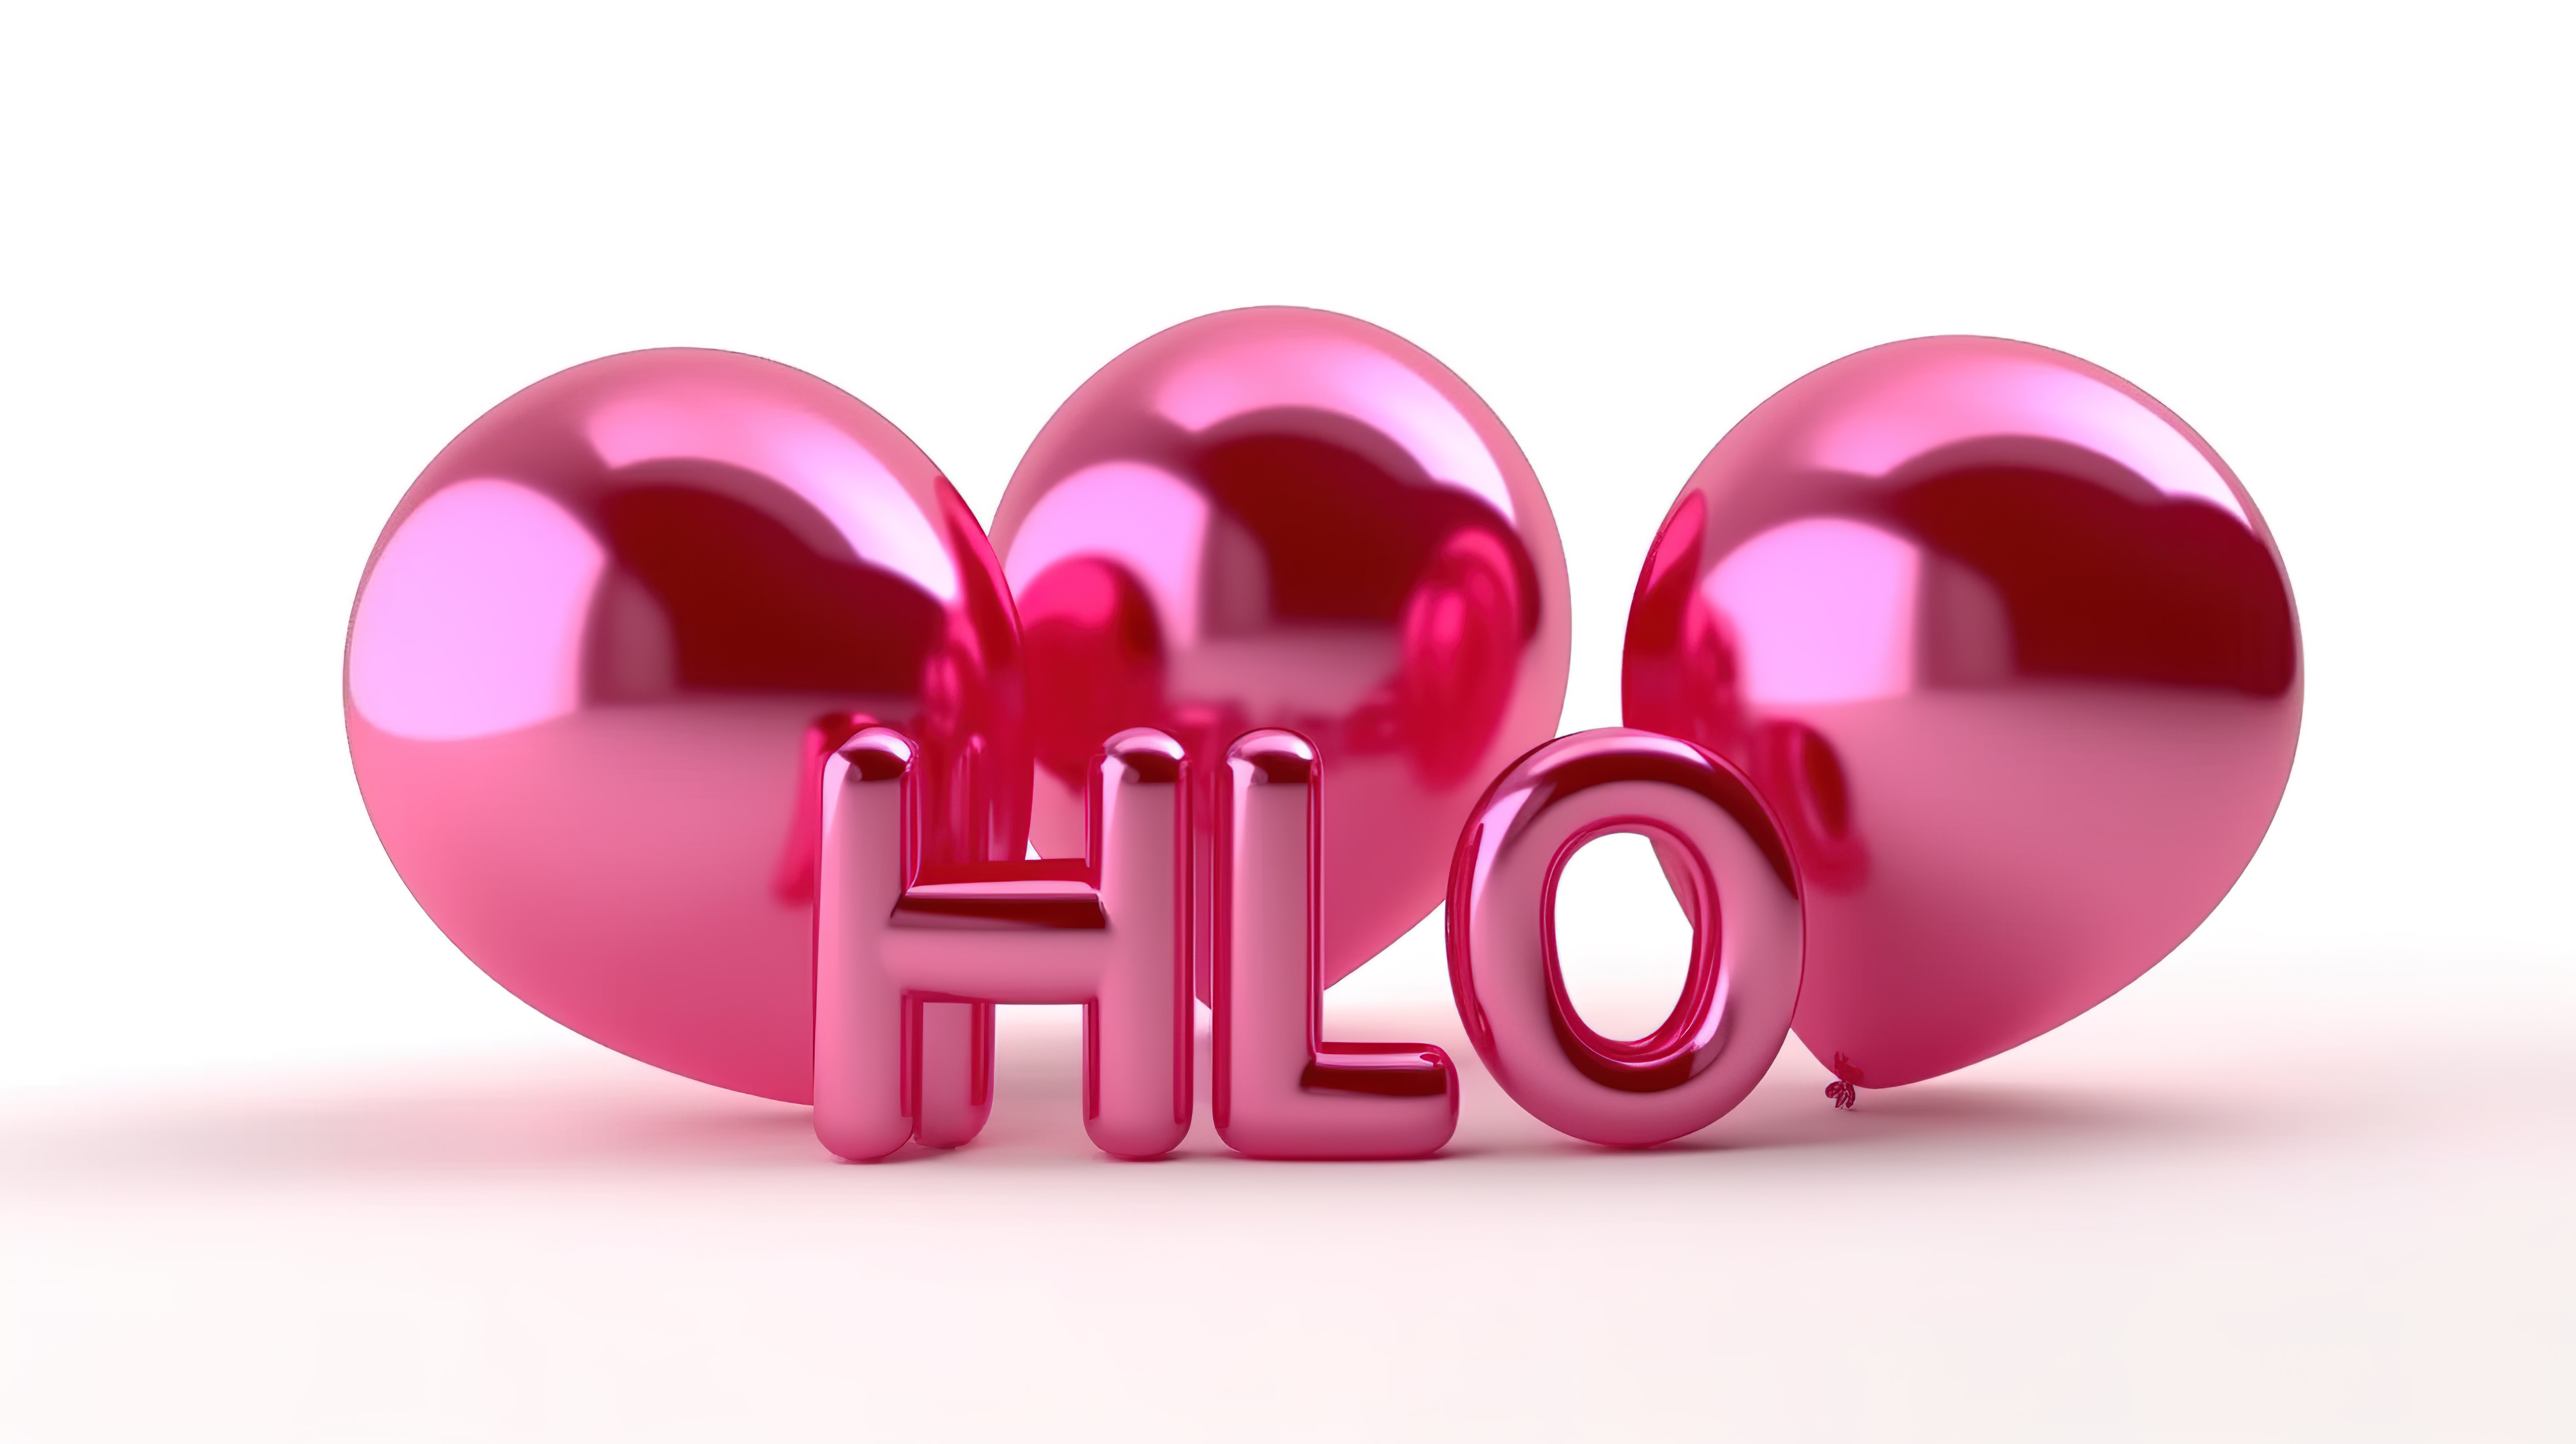 白色背景下“hello word”形状的全粉红色气球的 3D 插图图片